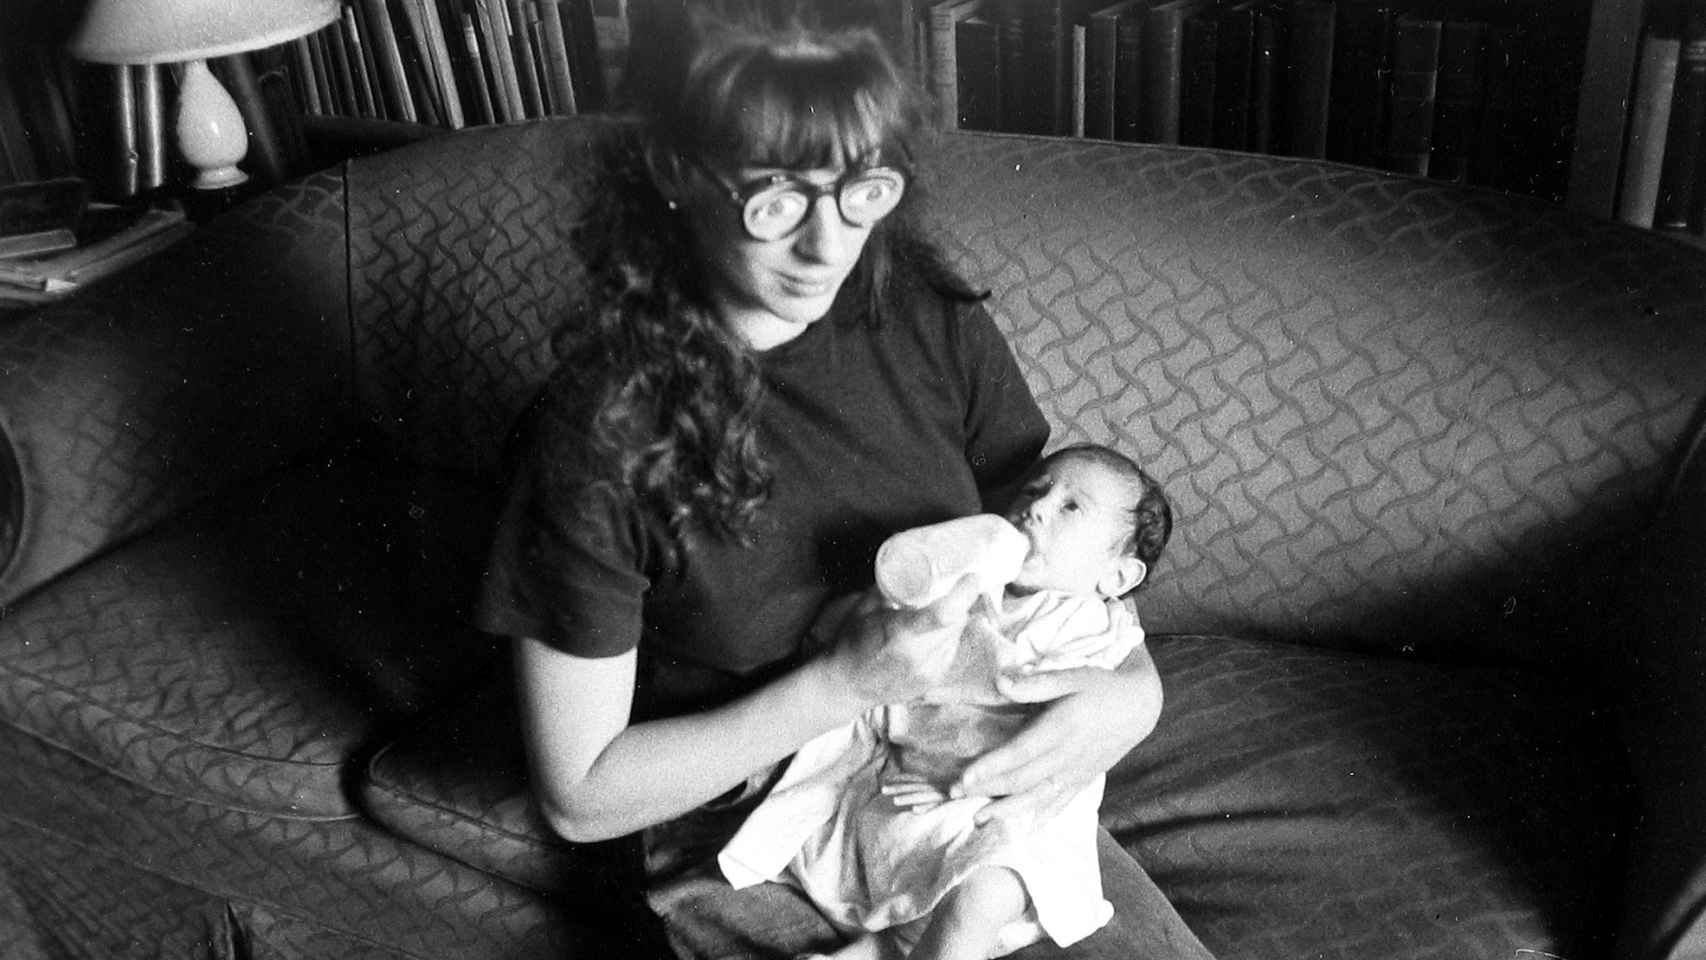 Robert Frank: 'Mary lleva unas gafas falsas mientras  da el biberón a Pablo en el sofá', h. 1951. © Andrea Frank Foundation